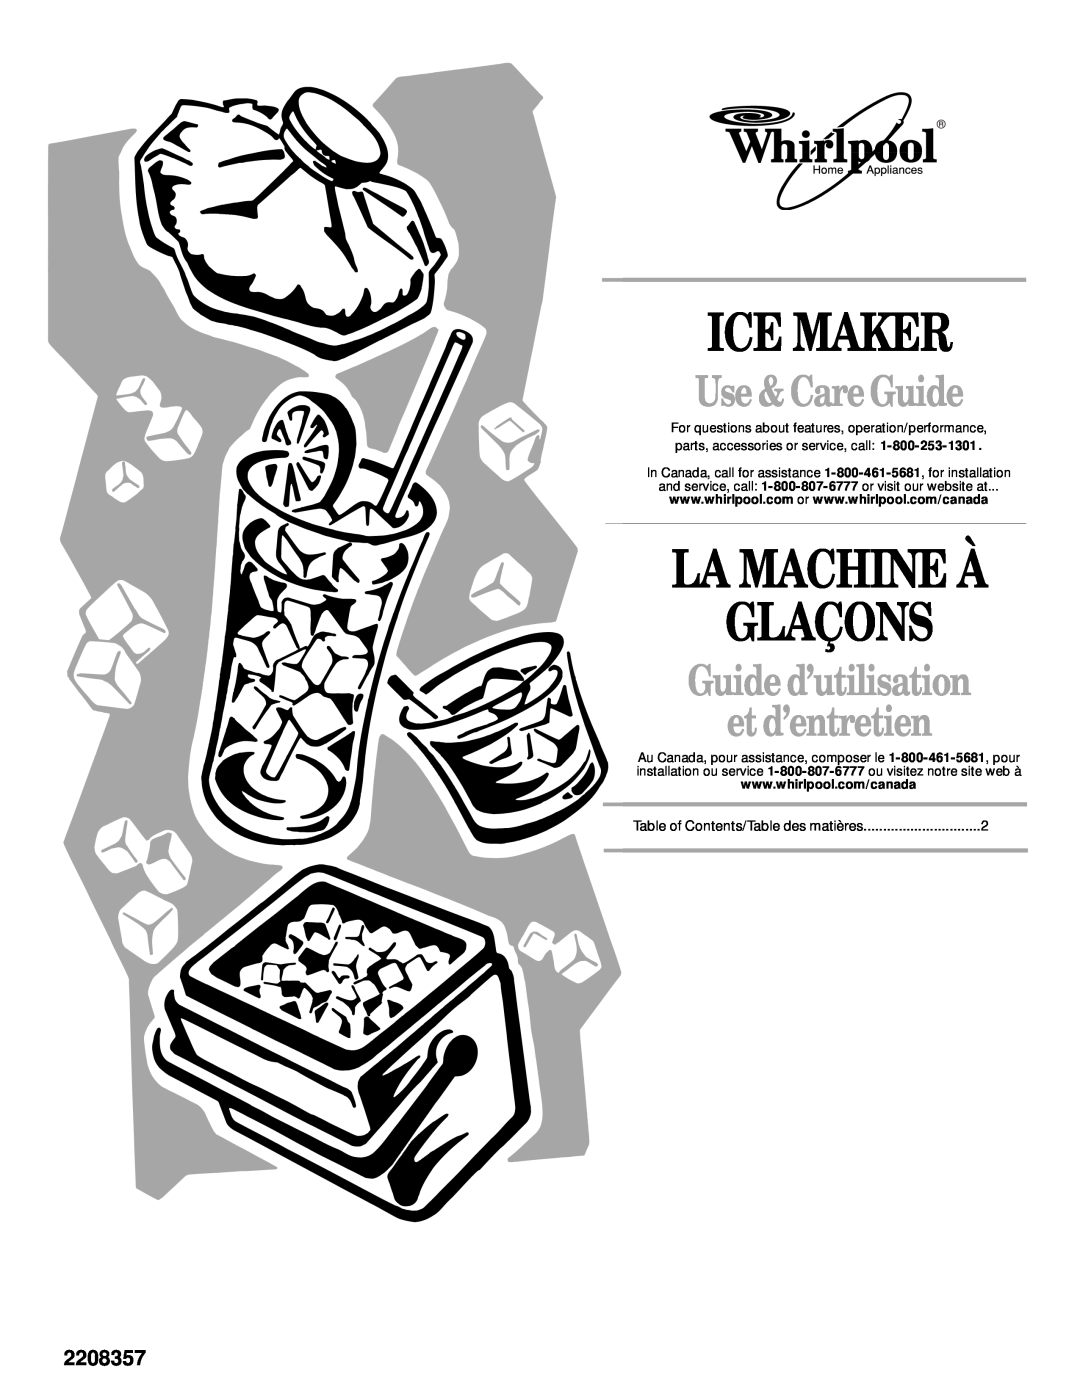 Whirlpool 2208357 manual Ice Maker, La Machine À Glaçons, Use &CareGuide, Guide d’utilisation et d’entretien 